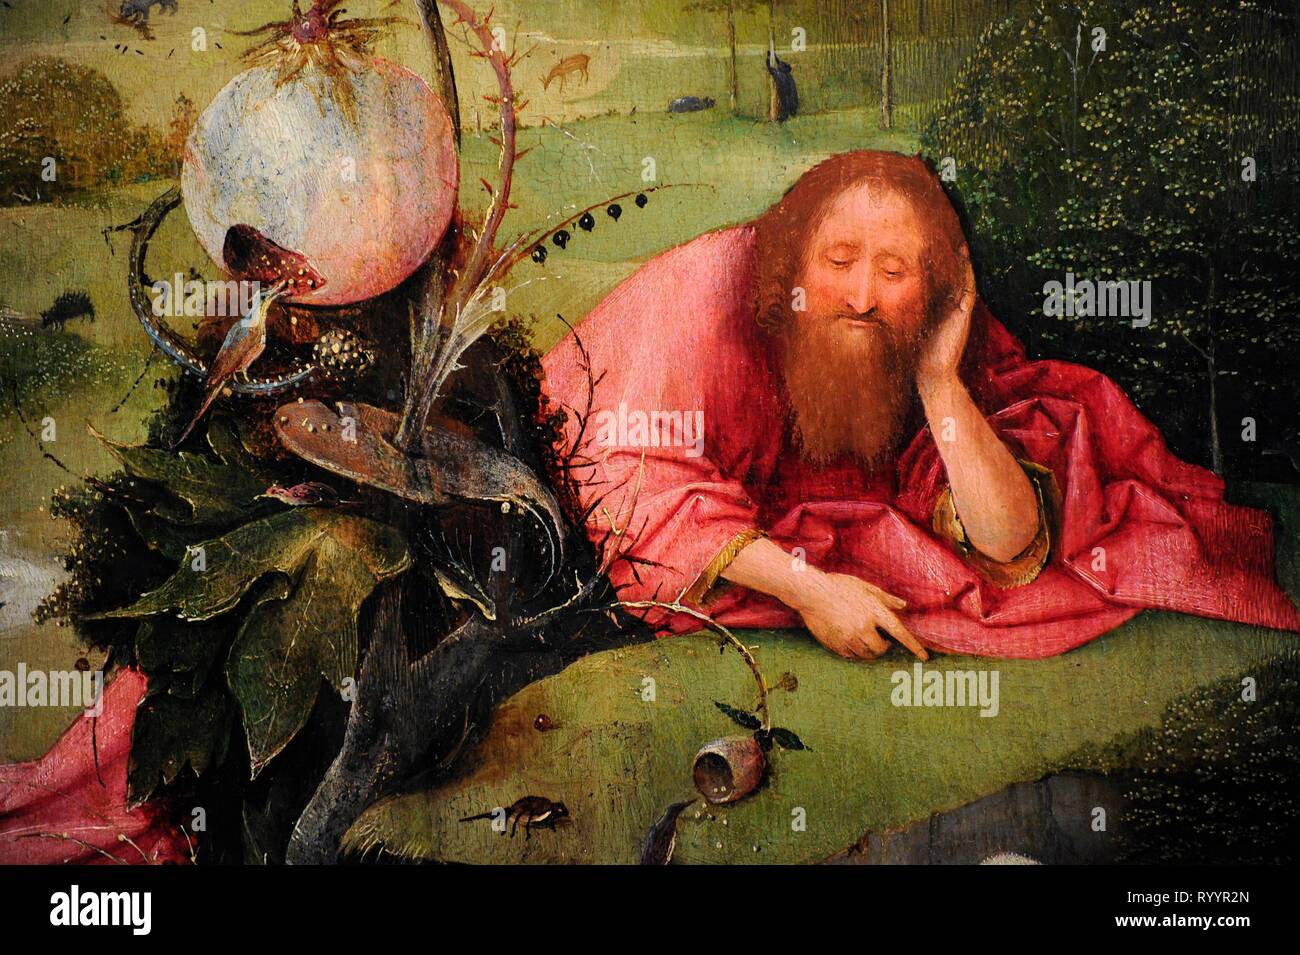 Bosch, Hieronymus Bosch Aeken o El Bosco (1450-1516). Pintor y grabador  neerlandés, perteneciente a la escuela Flamenca. Meditaciones de San Juan  Bautista, hacia 1495. Las Mejores. Museo Lázaro Galdiano. Madrid. España  Stockfotografie - Alamy